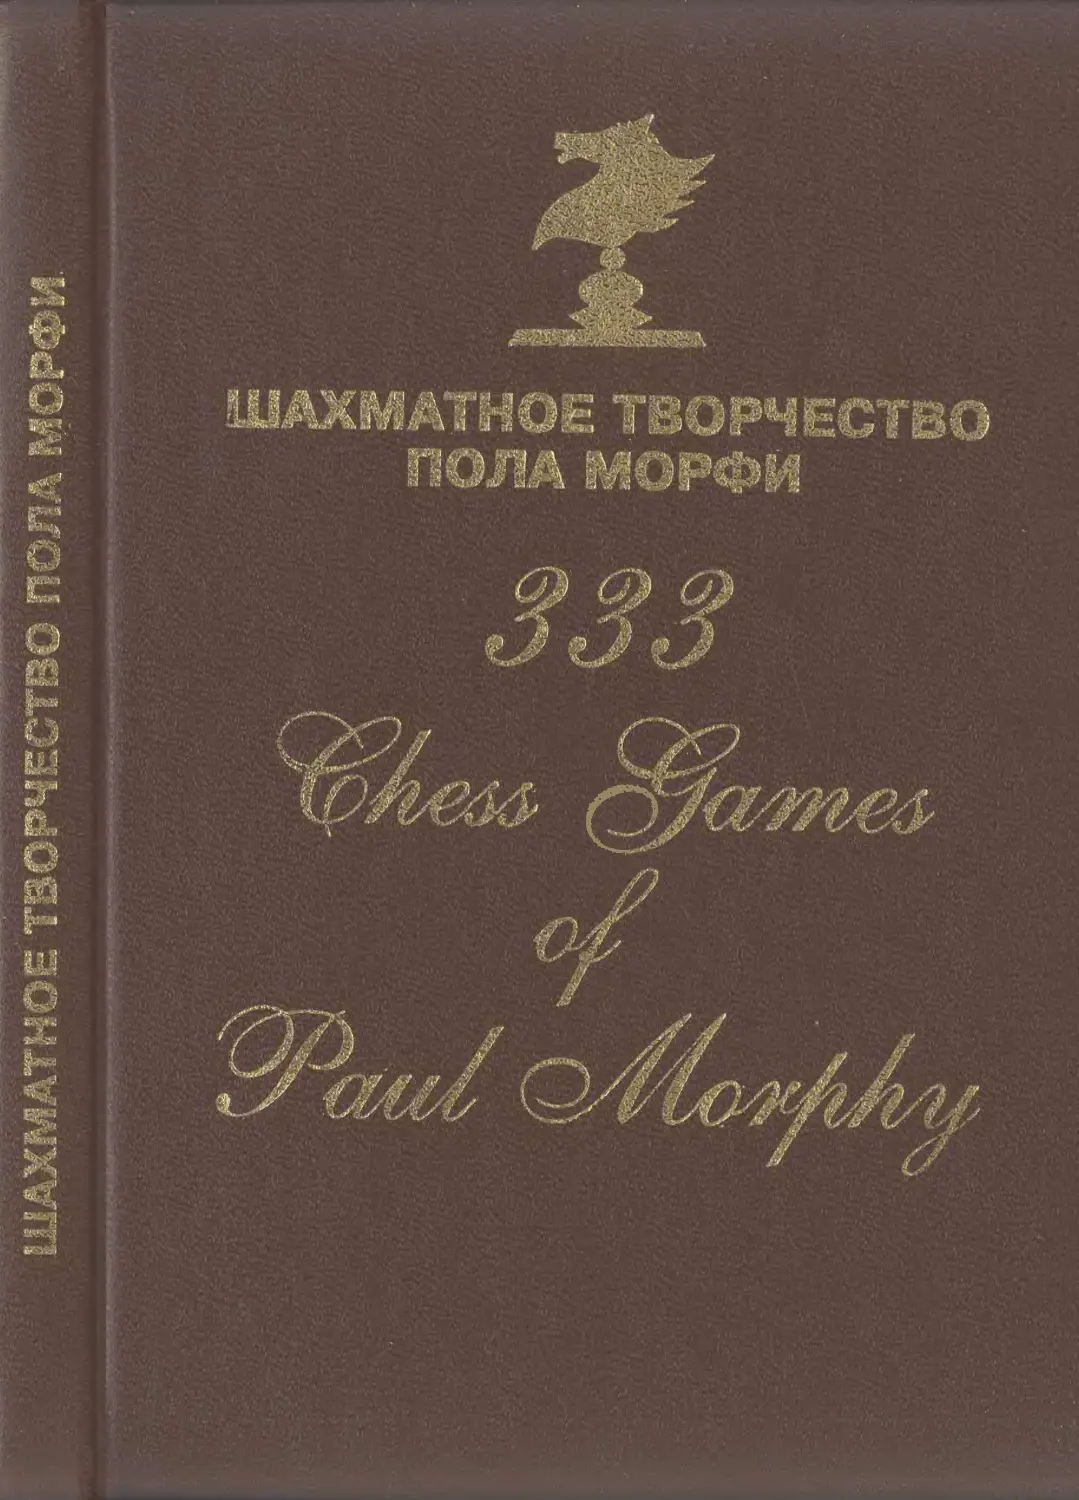 Шахматное творчество Пола Морфи